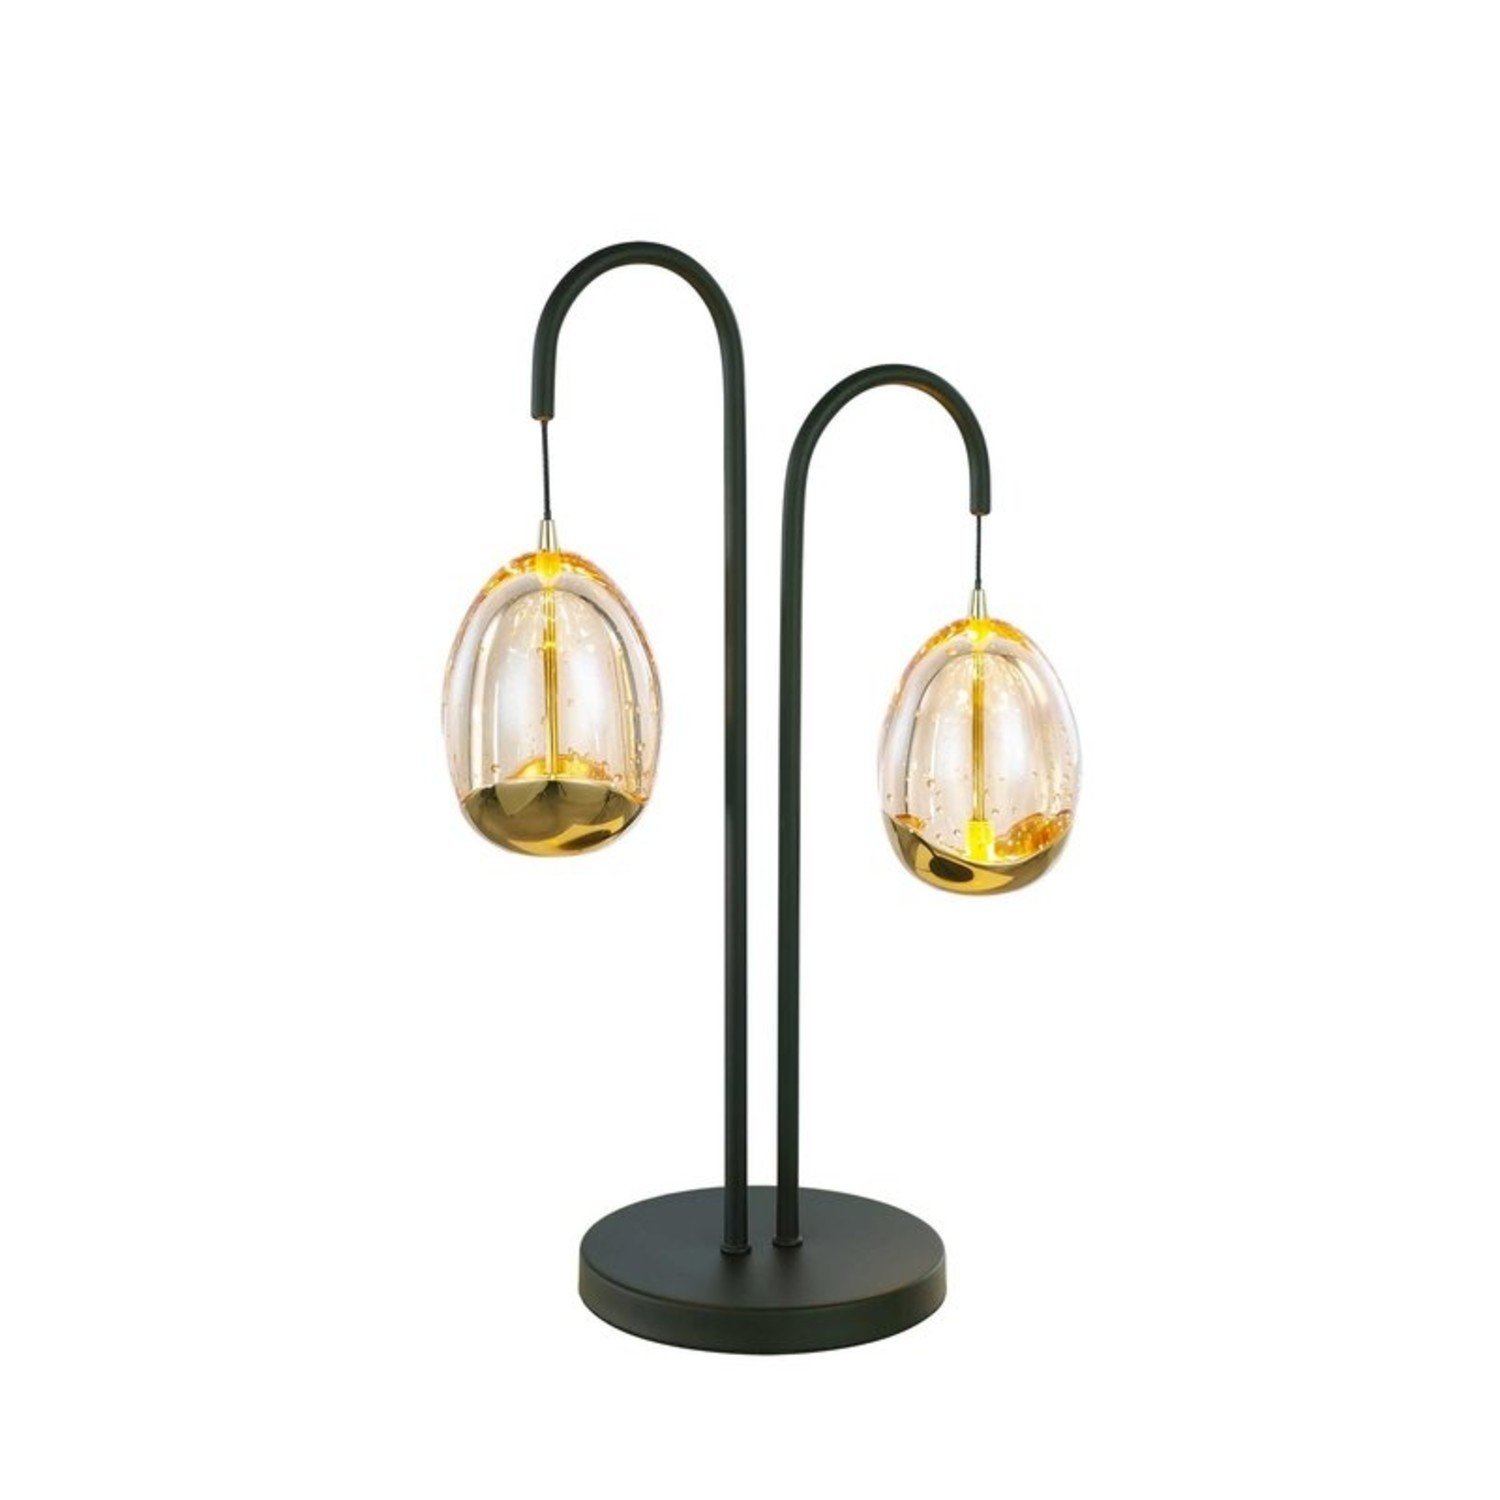 Zeug klant pk Design - Tafellamp - 2 lichts - Dimmer - Zwart - Golden Egg